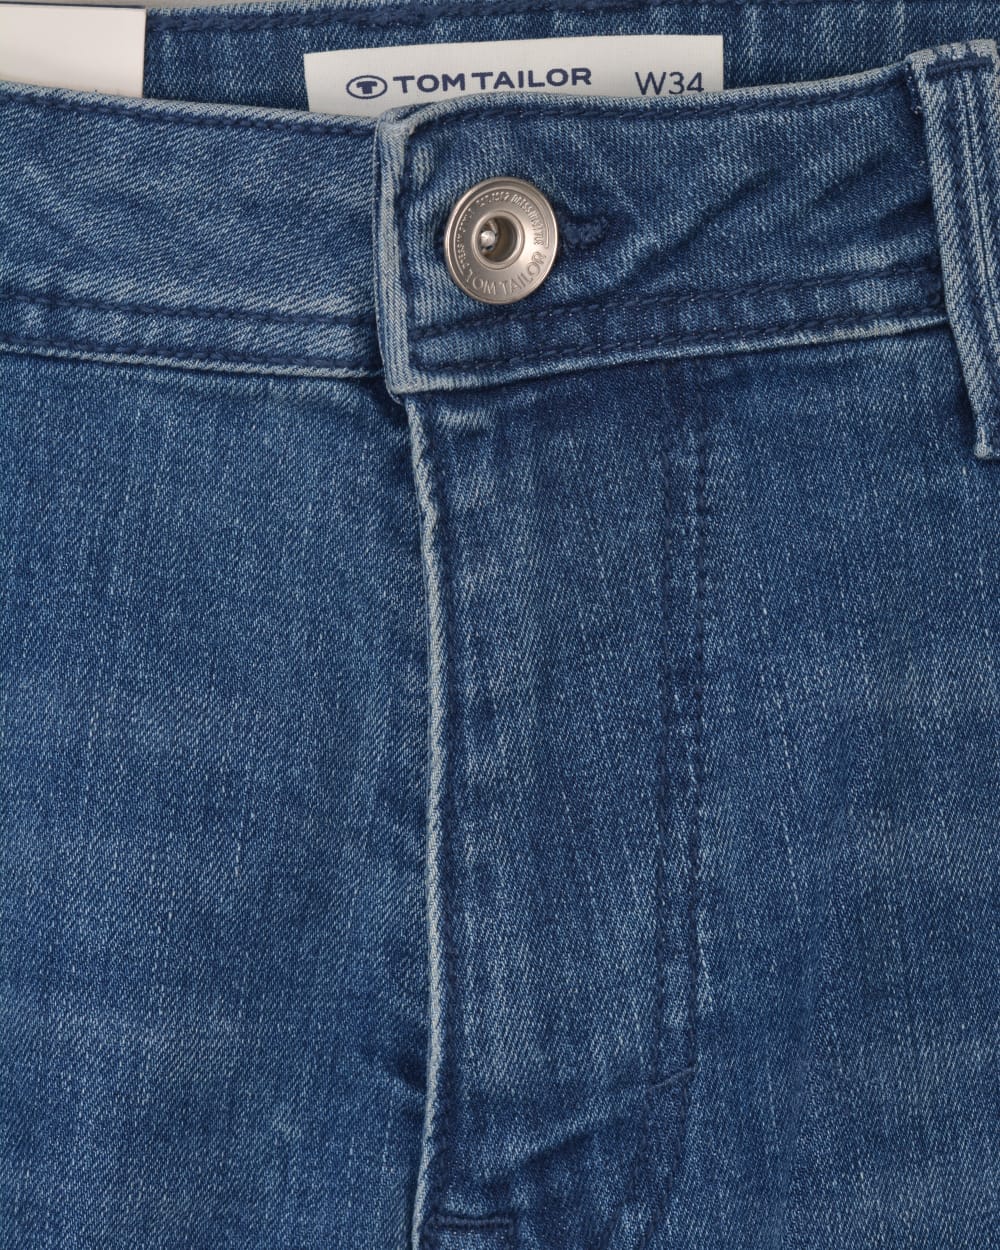 Tom Tailor Josh regular slim Denim Stone jeans Coolmax Blue | handsandhead Used Mid